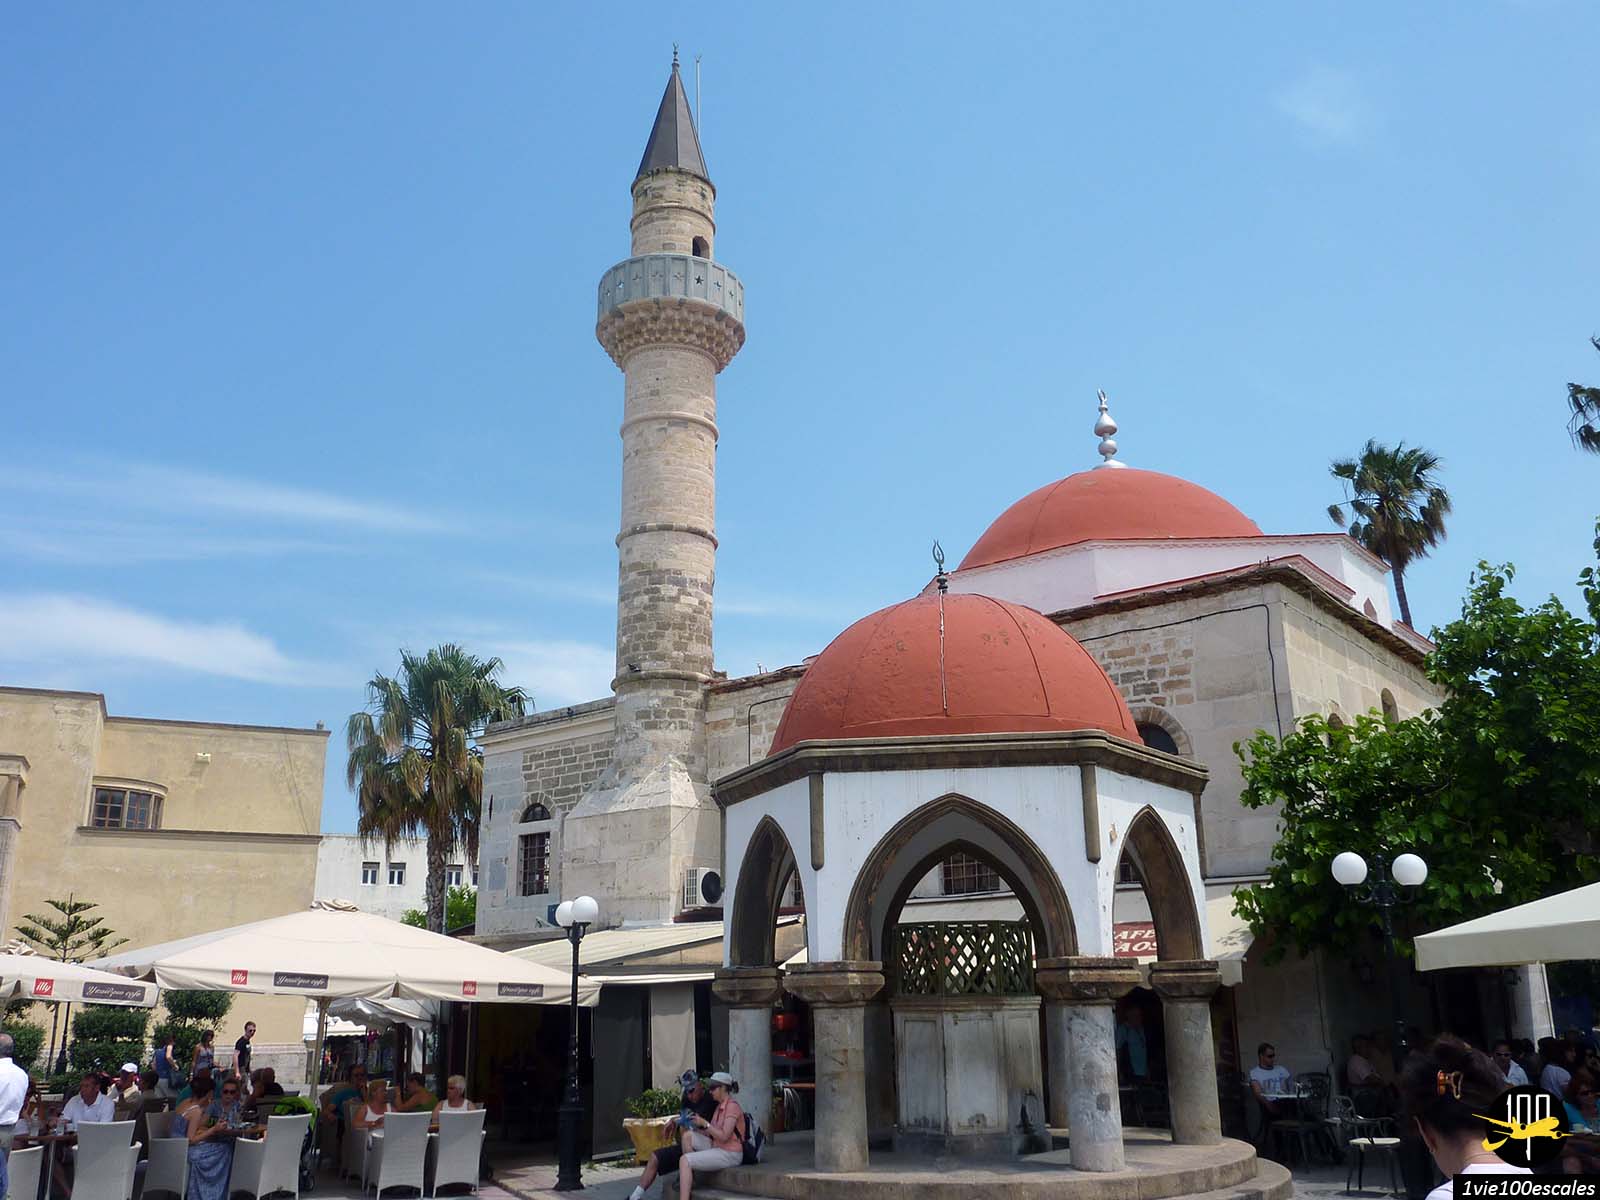 La mosquée Defterdar Ibrahim Pacha est une mosquée de l'époque ottomane située sur l'île de Kos en Grèce